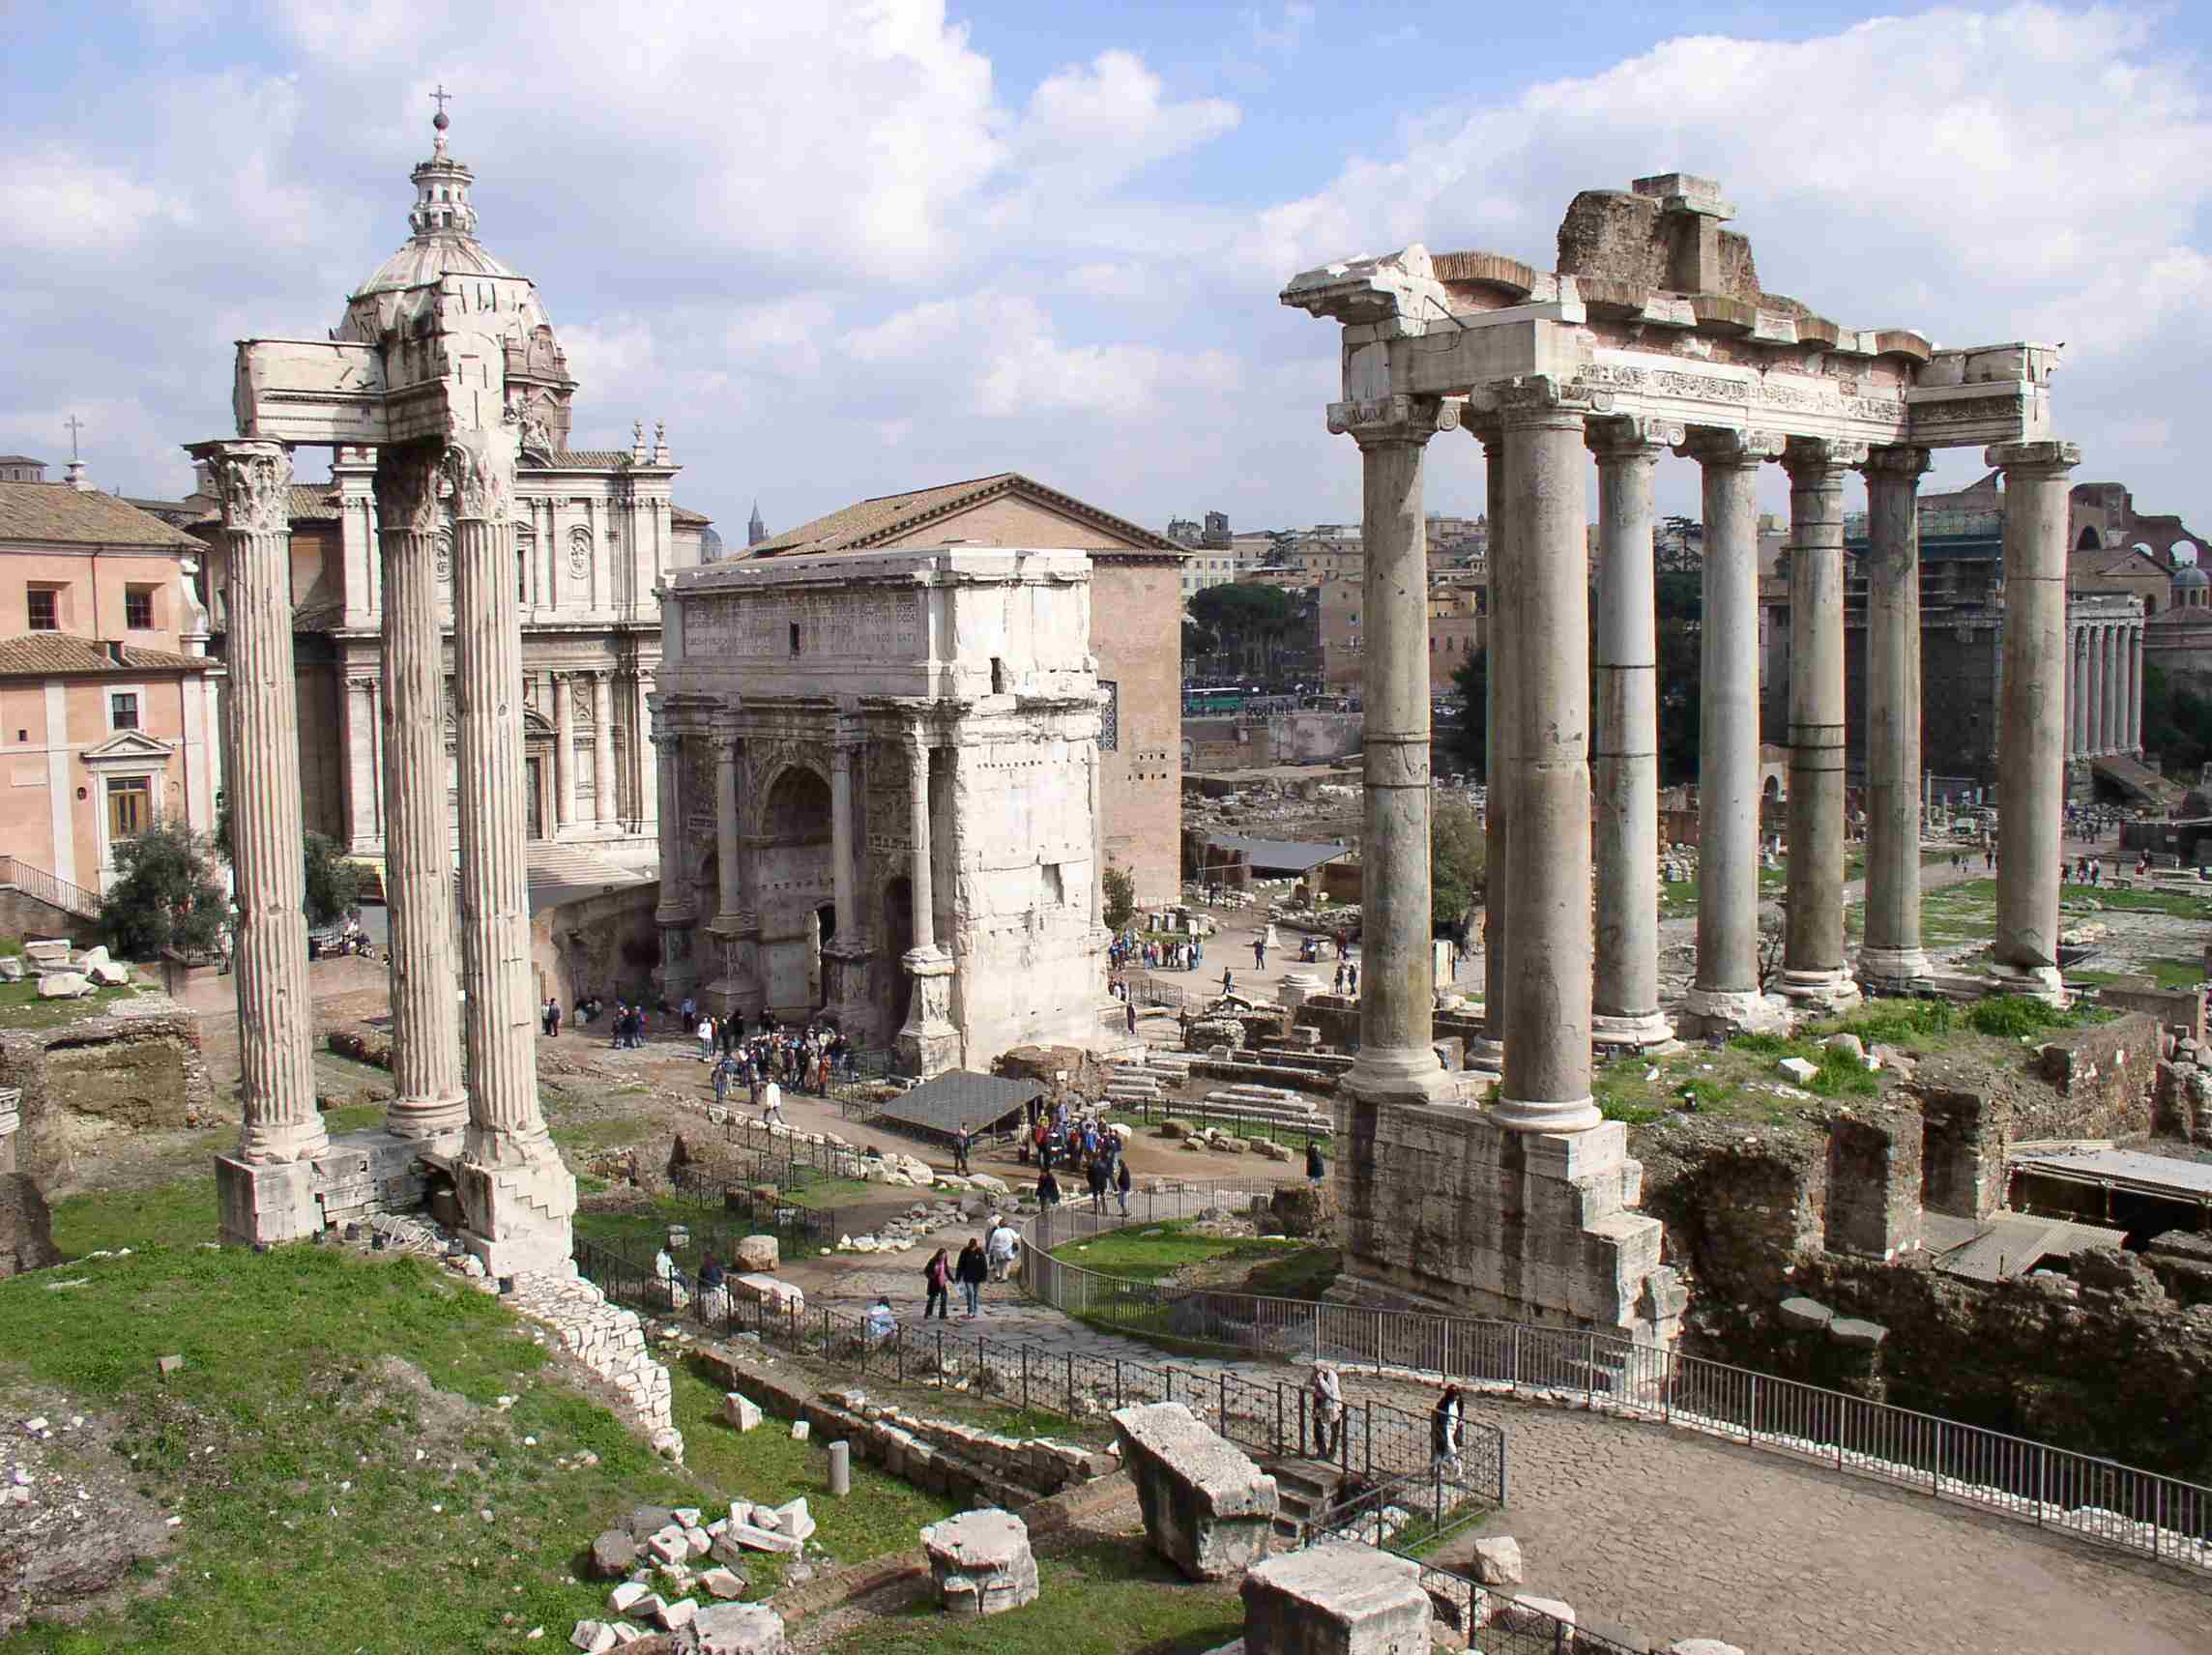 ancient roman consuls